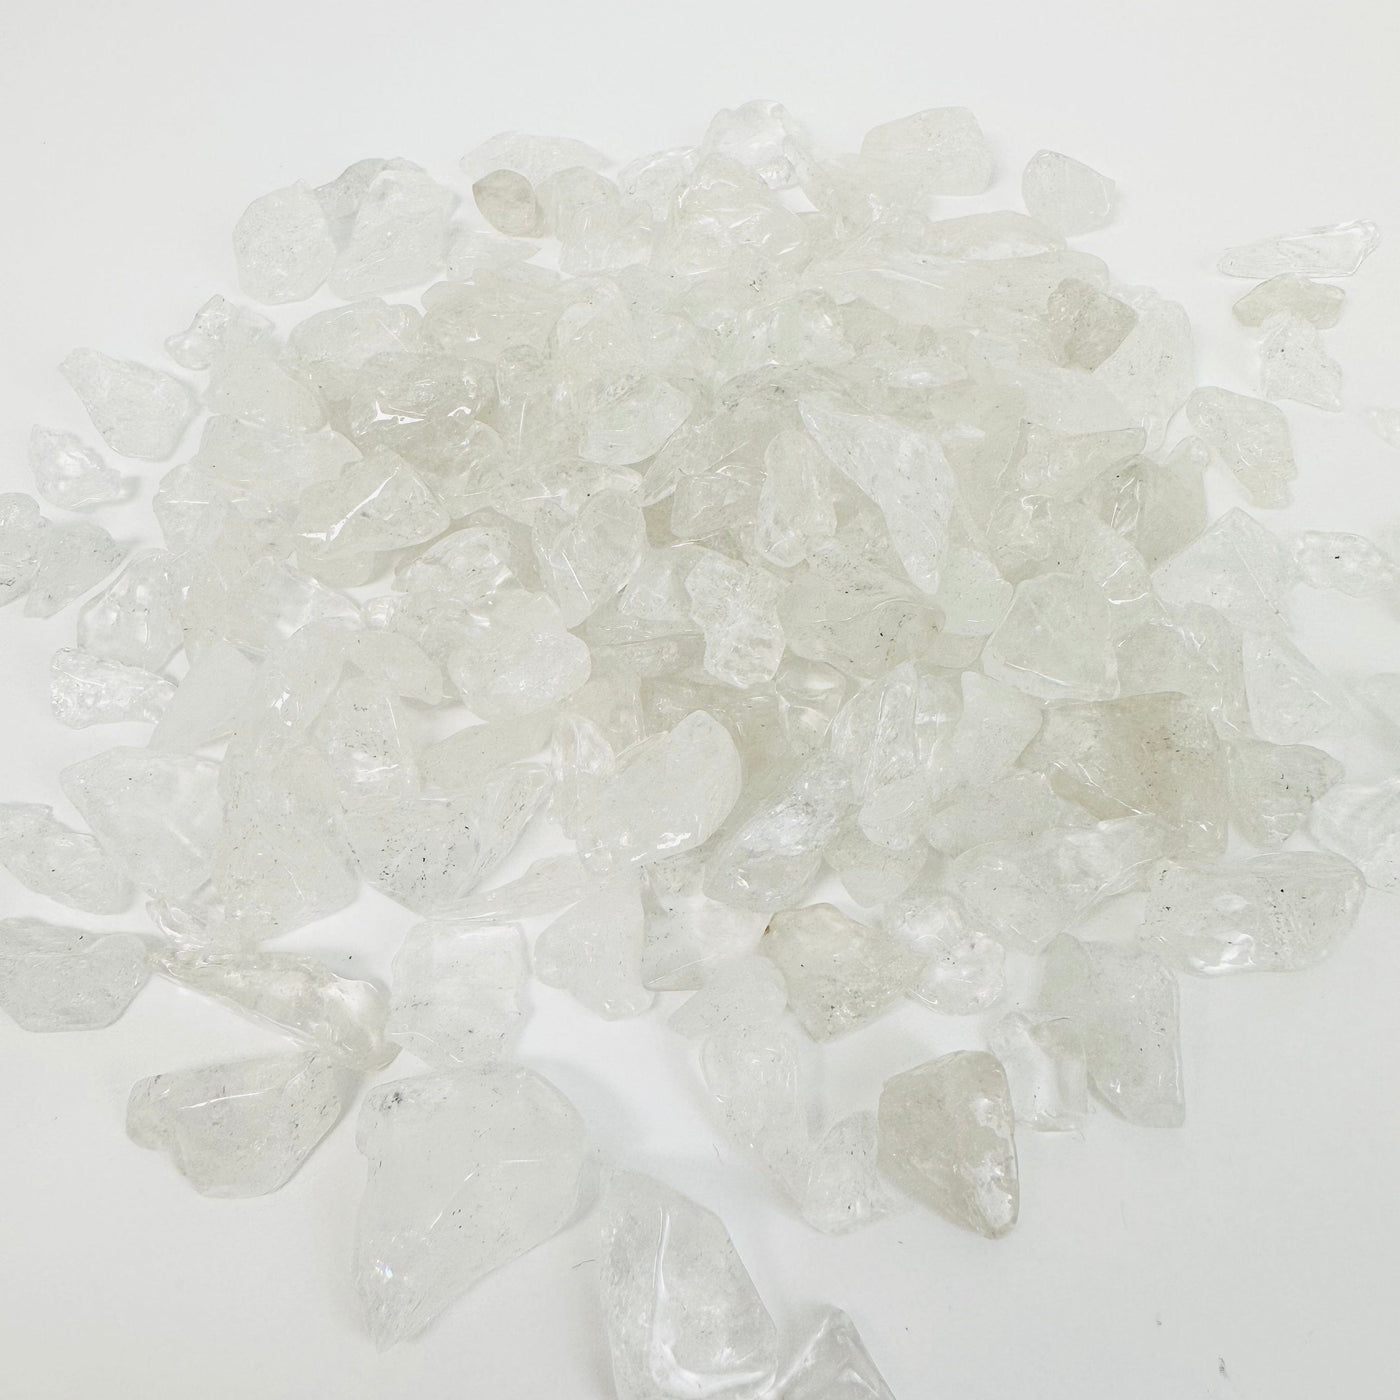 Crystal Quartz 1Lb Polished Freeform Chips - pile of crystal quartz chips 